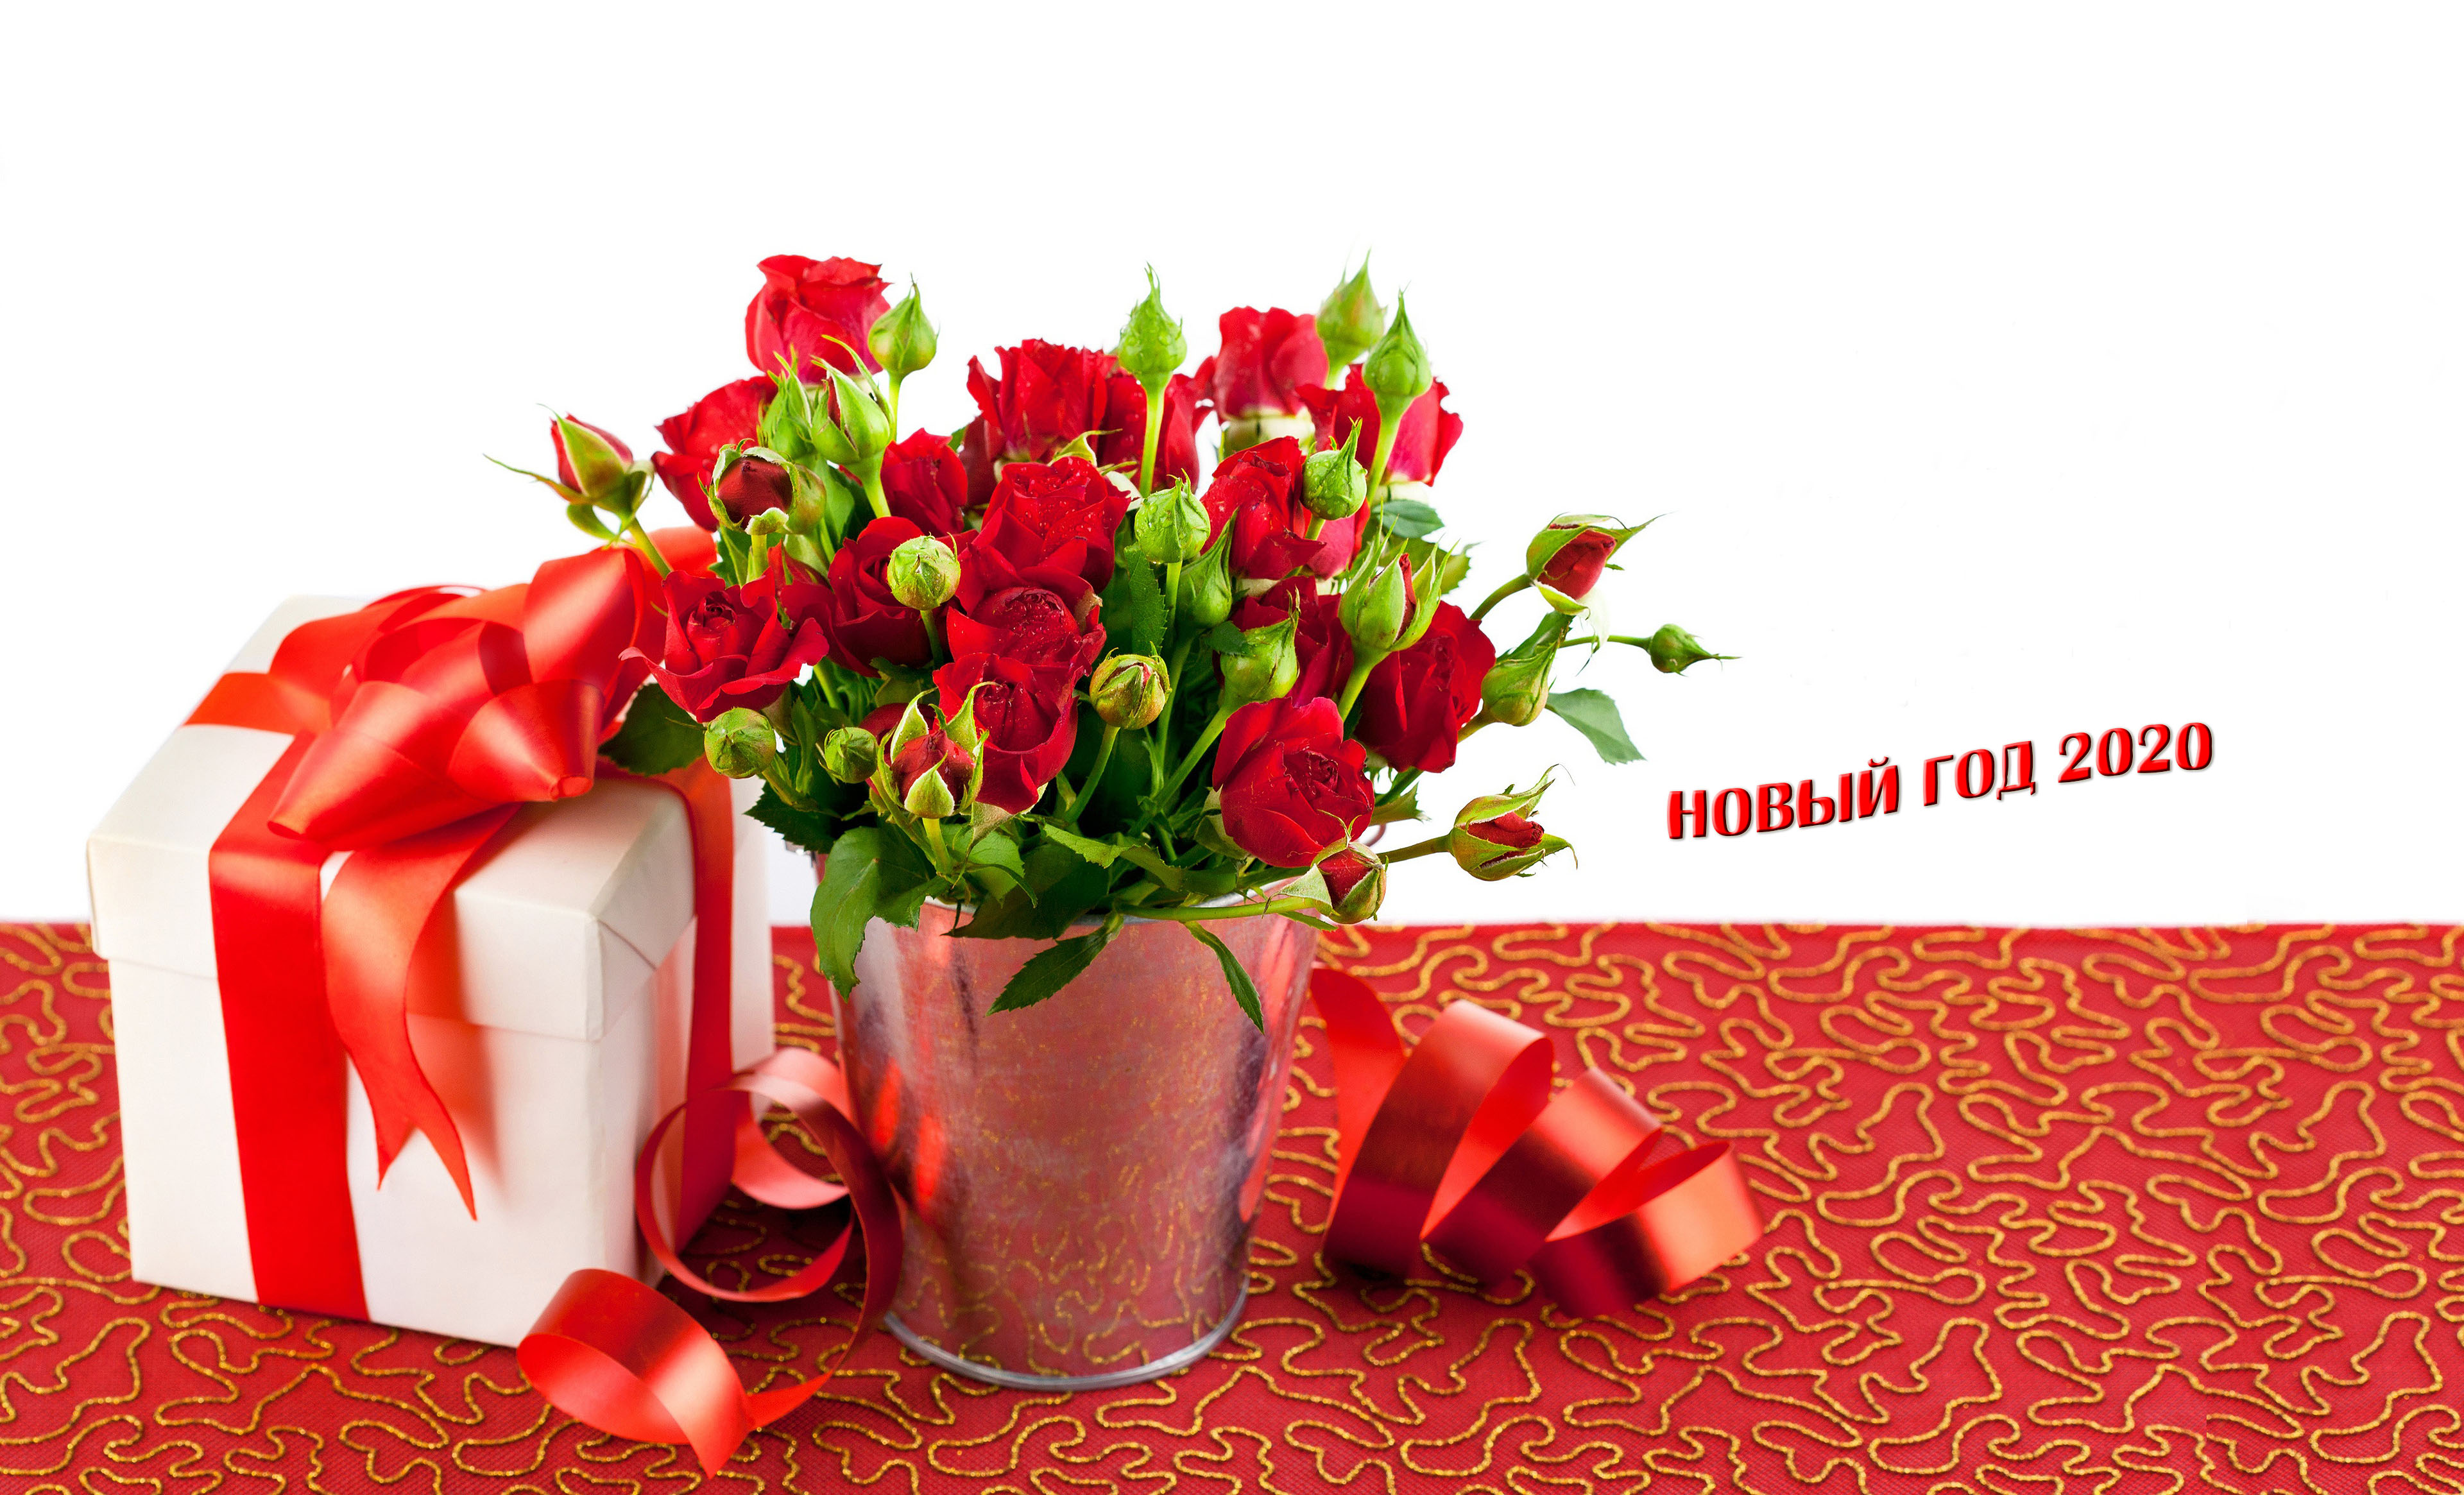 HDoboi.Kiev.ua - Новогодний подарок с розами, красивые обои нового года 2020